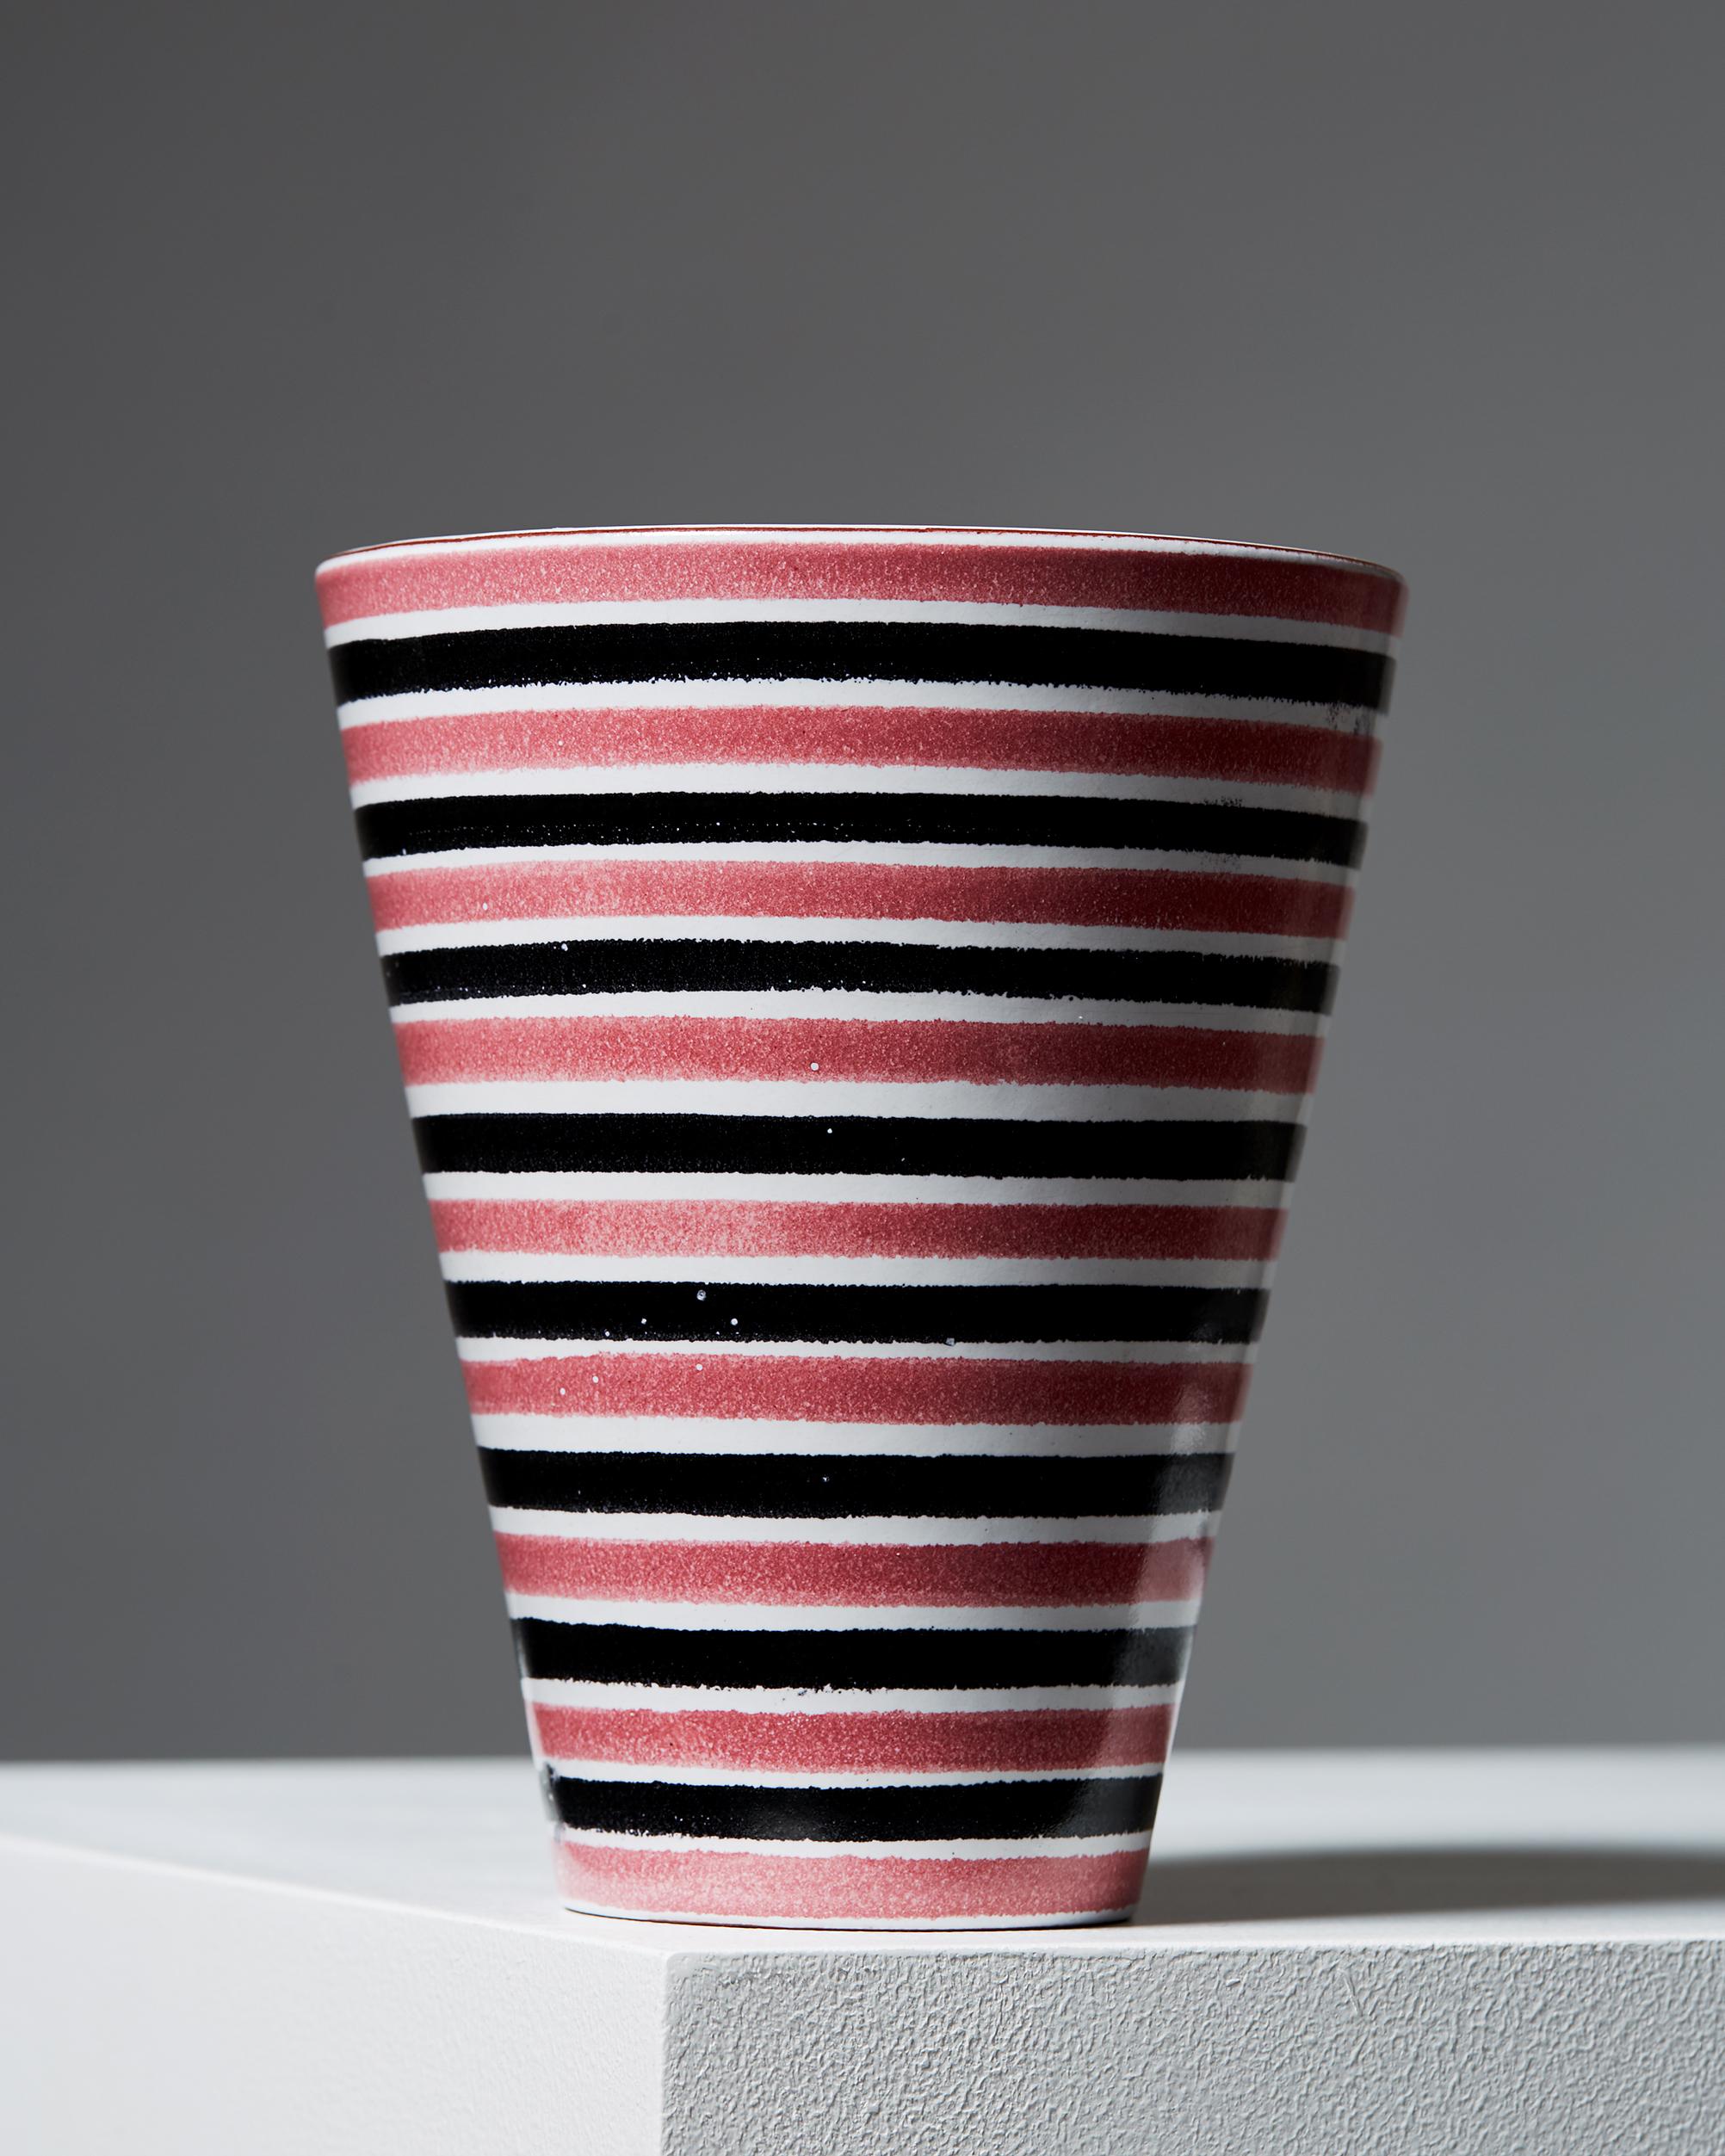 Vase, entworfen von Stig Lindberg für Gustavsberg,
Schweden. 1950s.

Steingut.

Abmessungen: 
Höhe: 16 cm/ 6 1/3